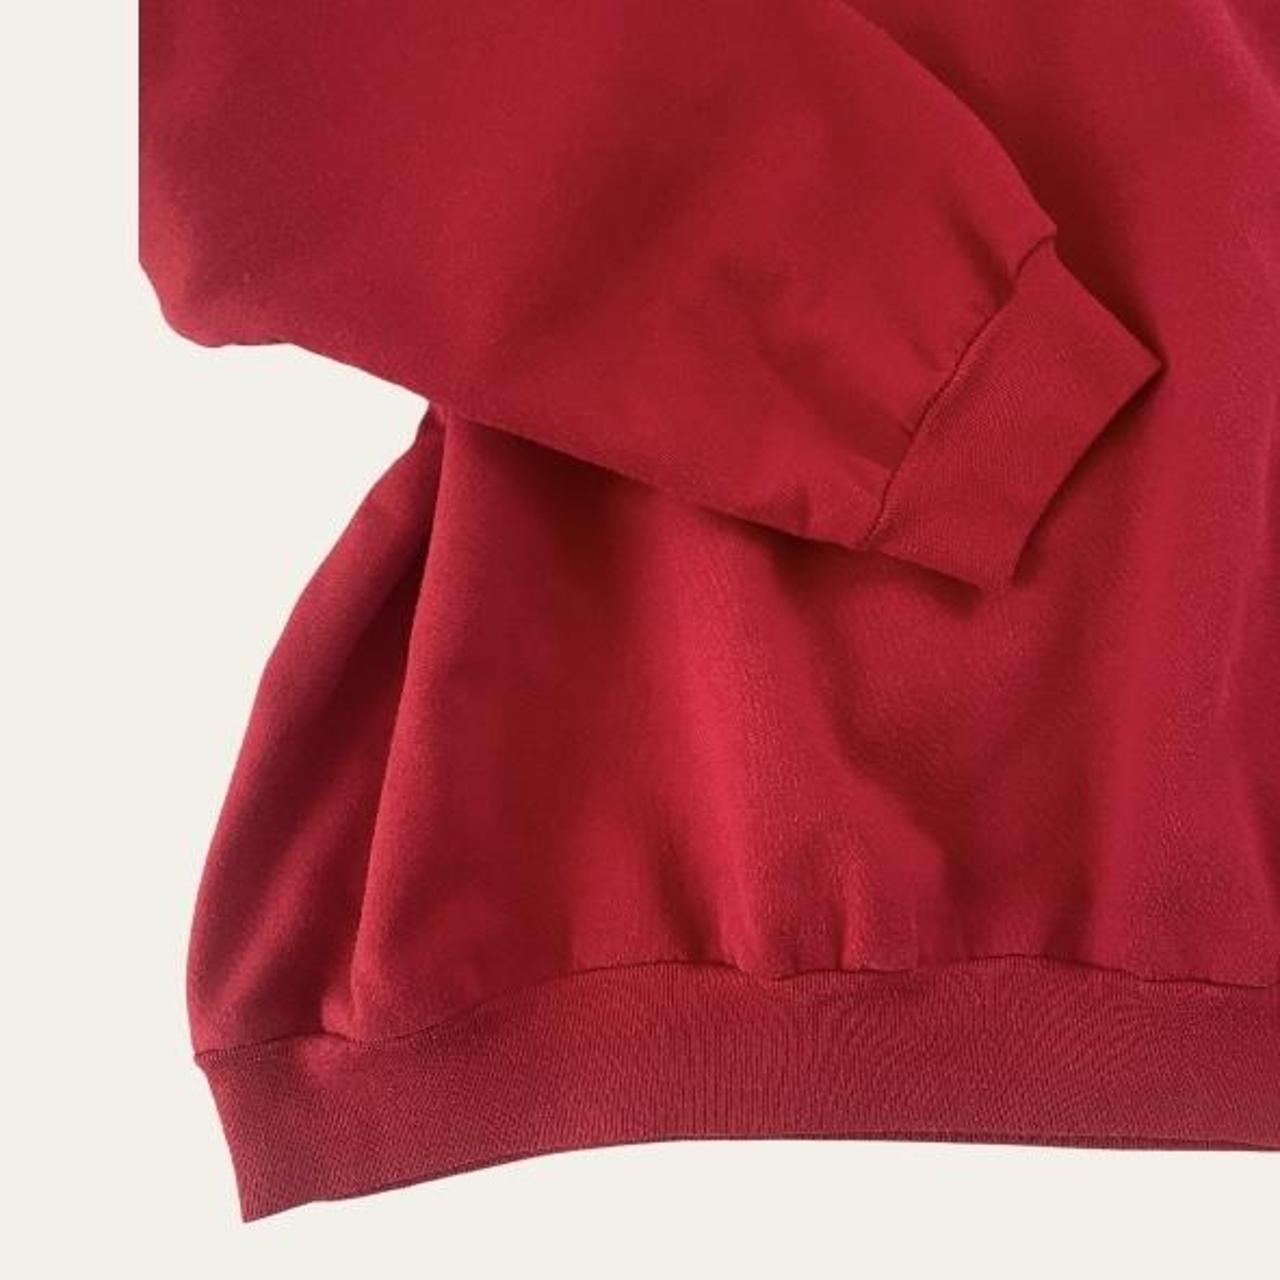 Women's Red and Black Sweatshirt | Depop